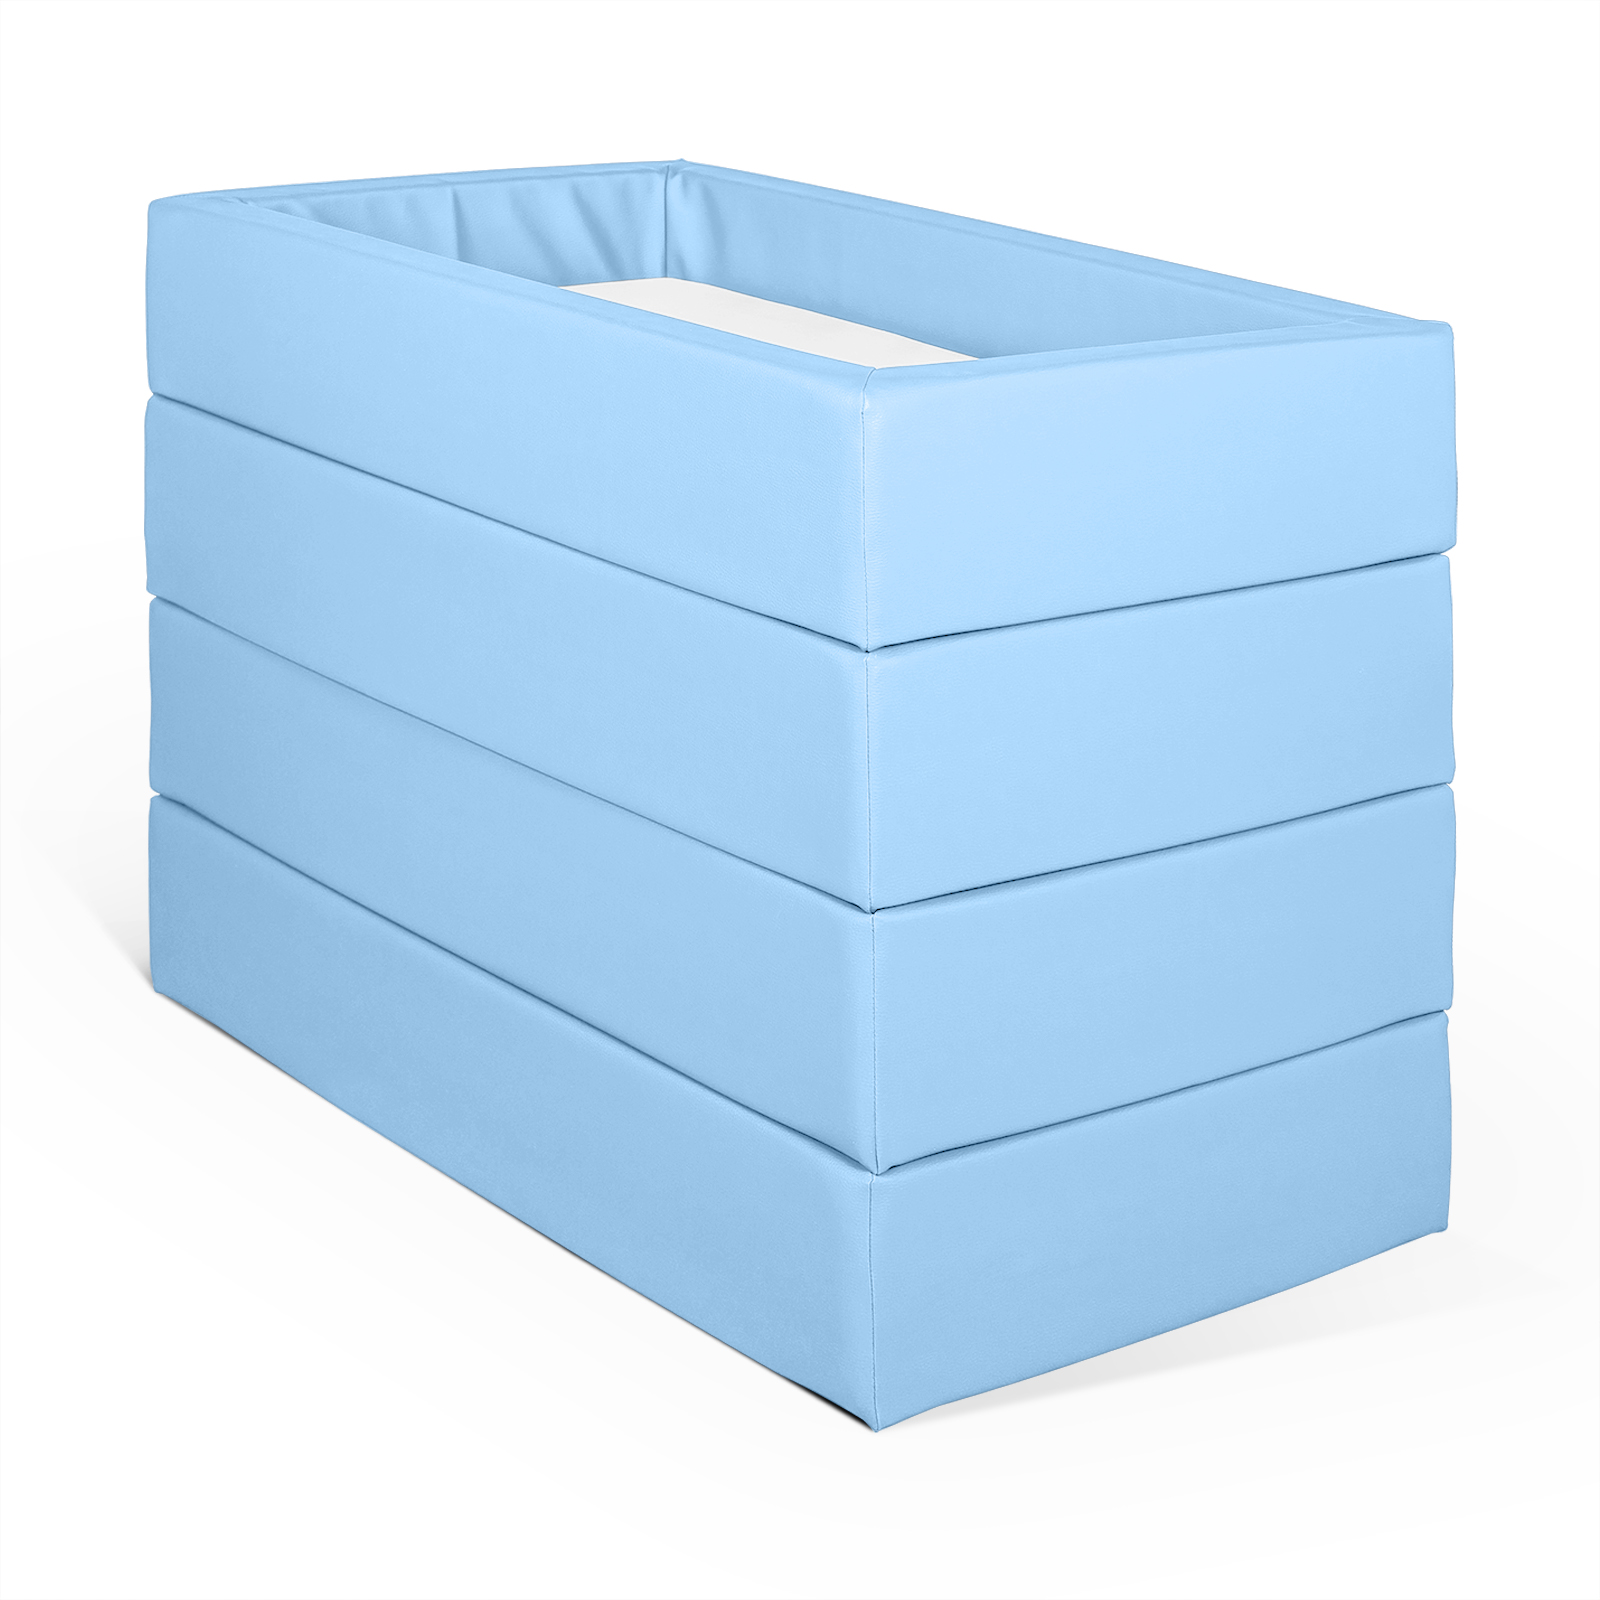 Gestapeltes Babybett oder Kinderbett aus Vollschaum bezogen mit Kunstleder hellblau und einer hygienischen Matratze in Kunstleder weiß